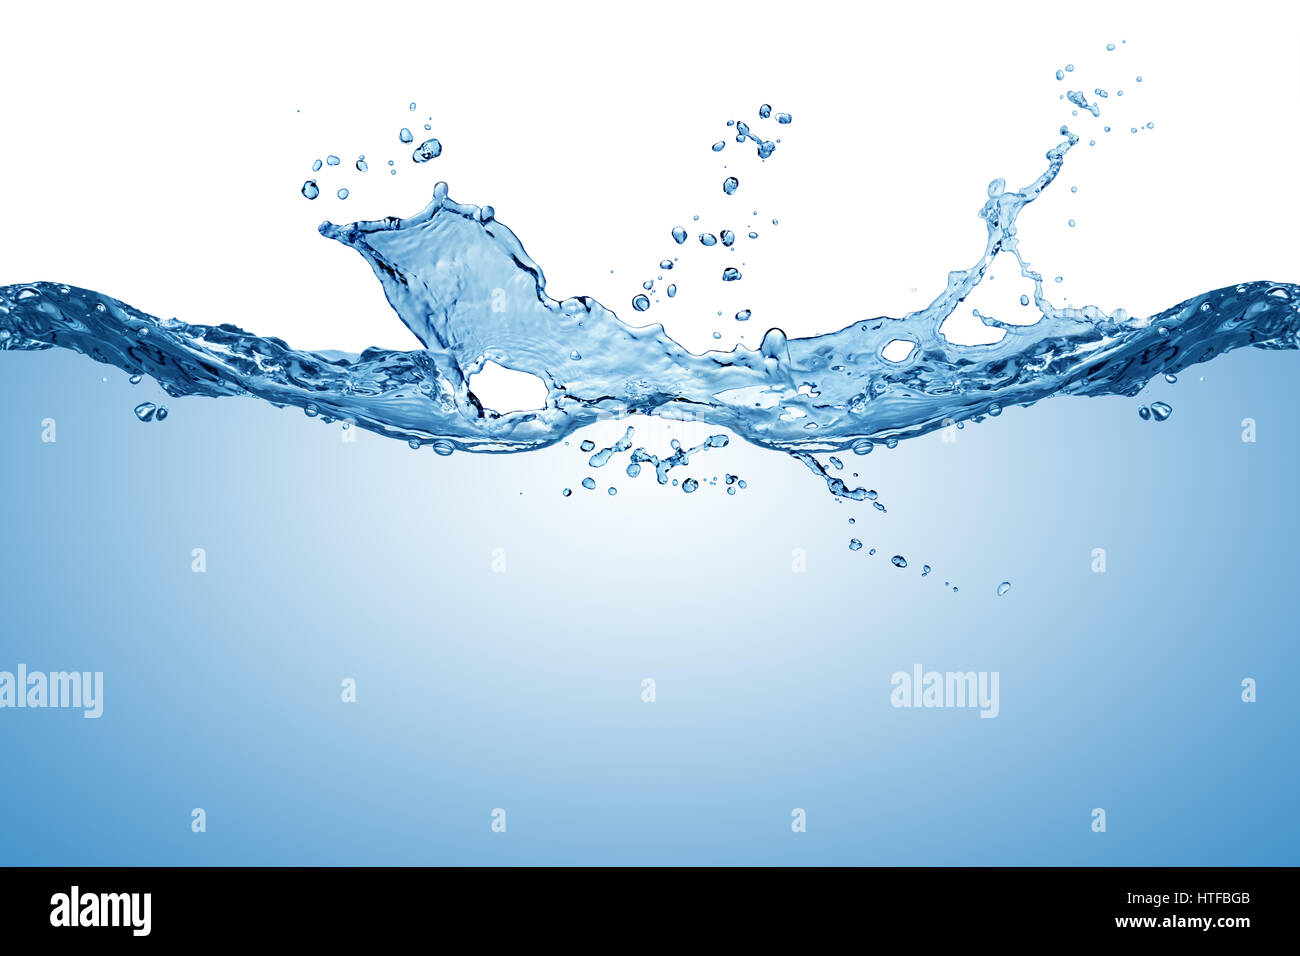 Agua pura fresca azul splash wave textura del fondo aislado en blanco Foto de stock